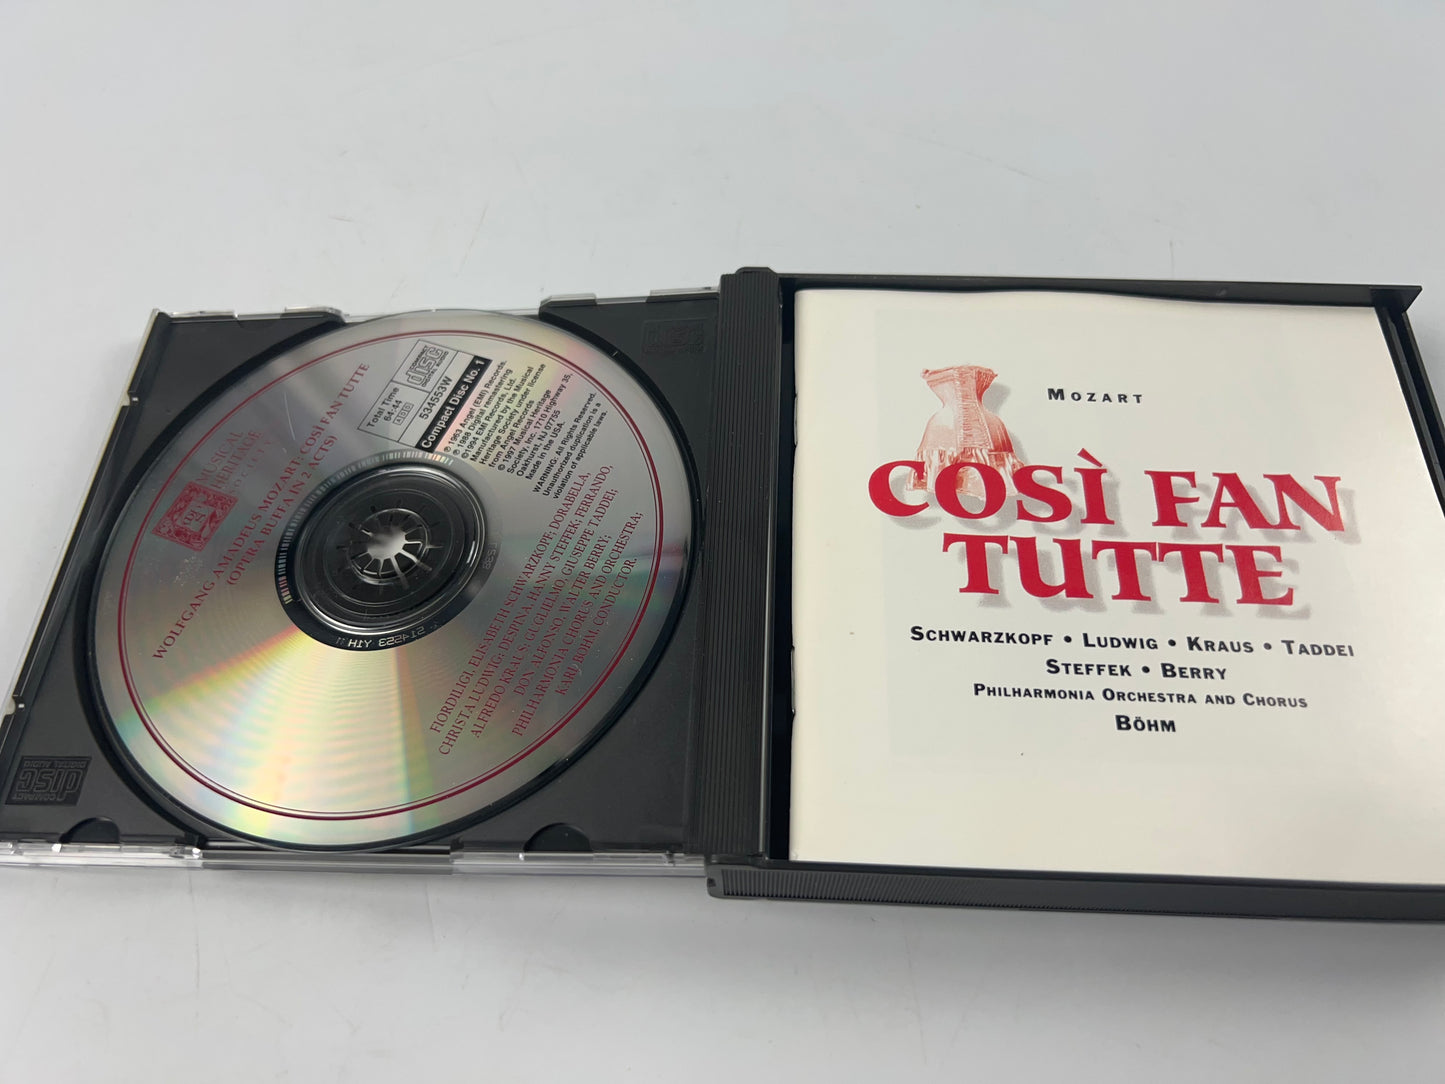 Mozart / Schwarzkopf, Ludwig, Kraus, Taddei : Così Fan Tutte (3 CD Set MHS)